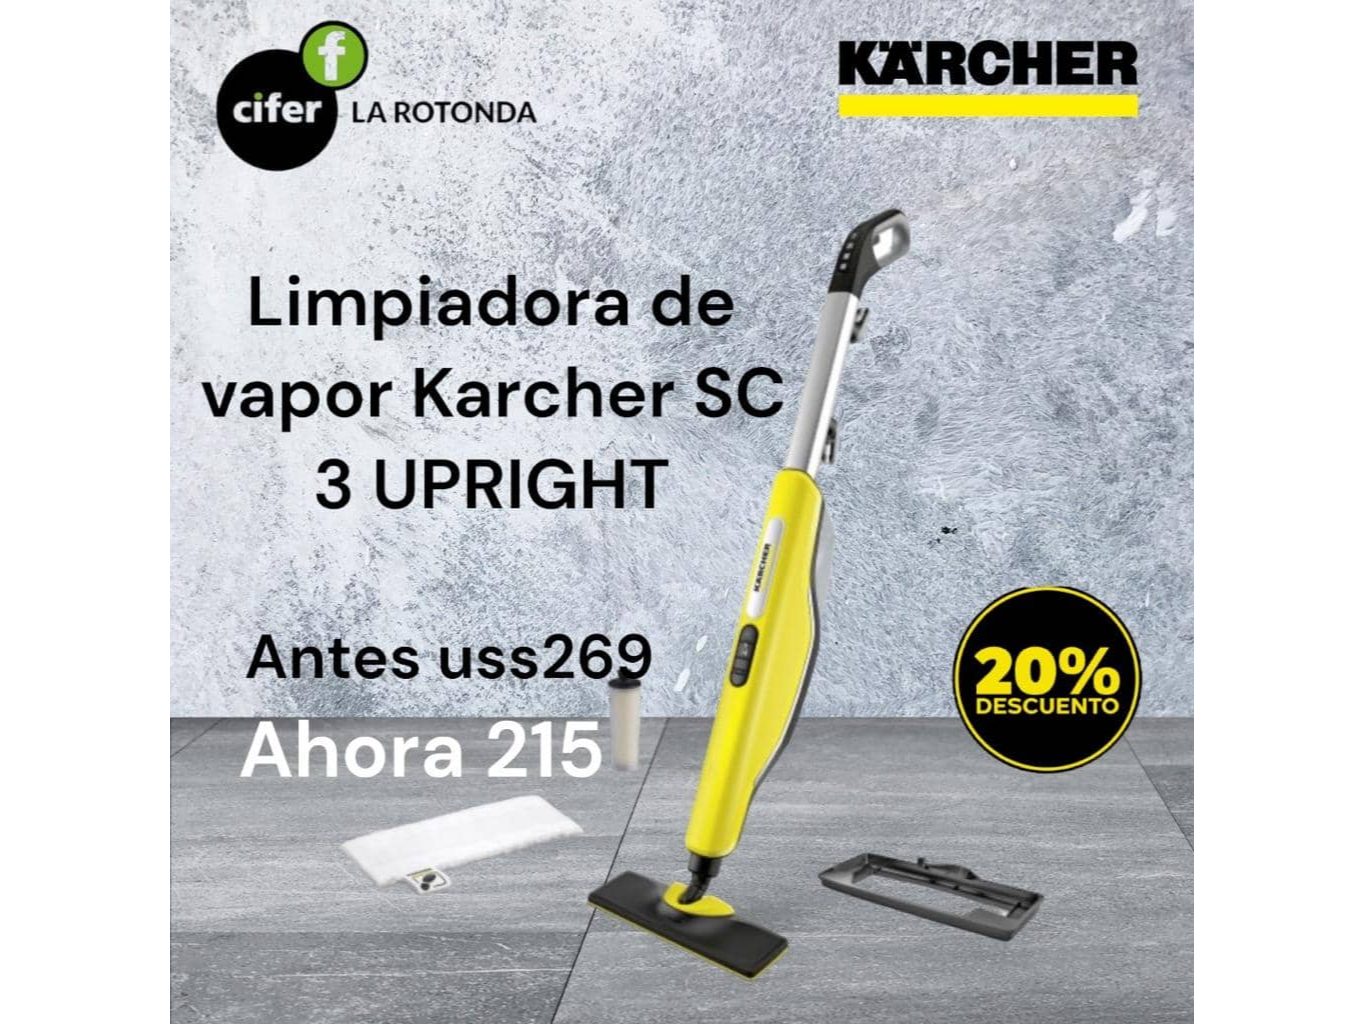 Limpiadora de vapor Karcher SC 3 UPRIGHT – Cifer